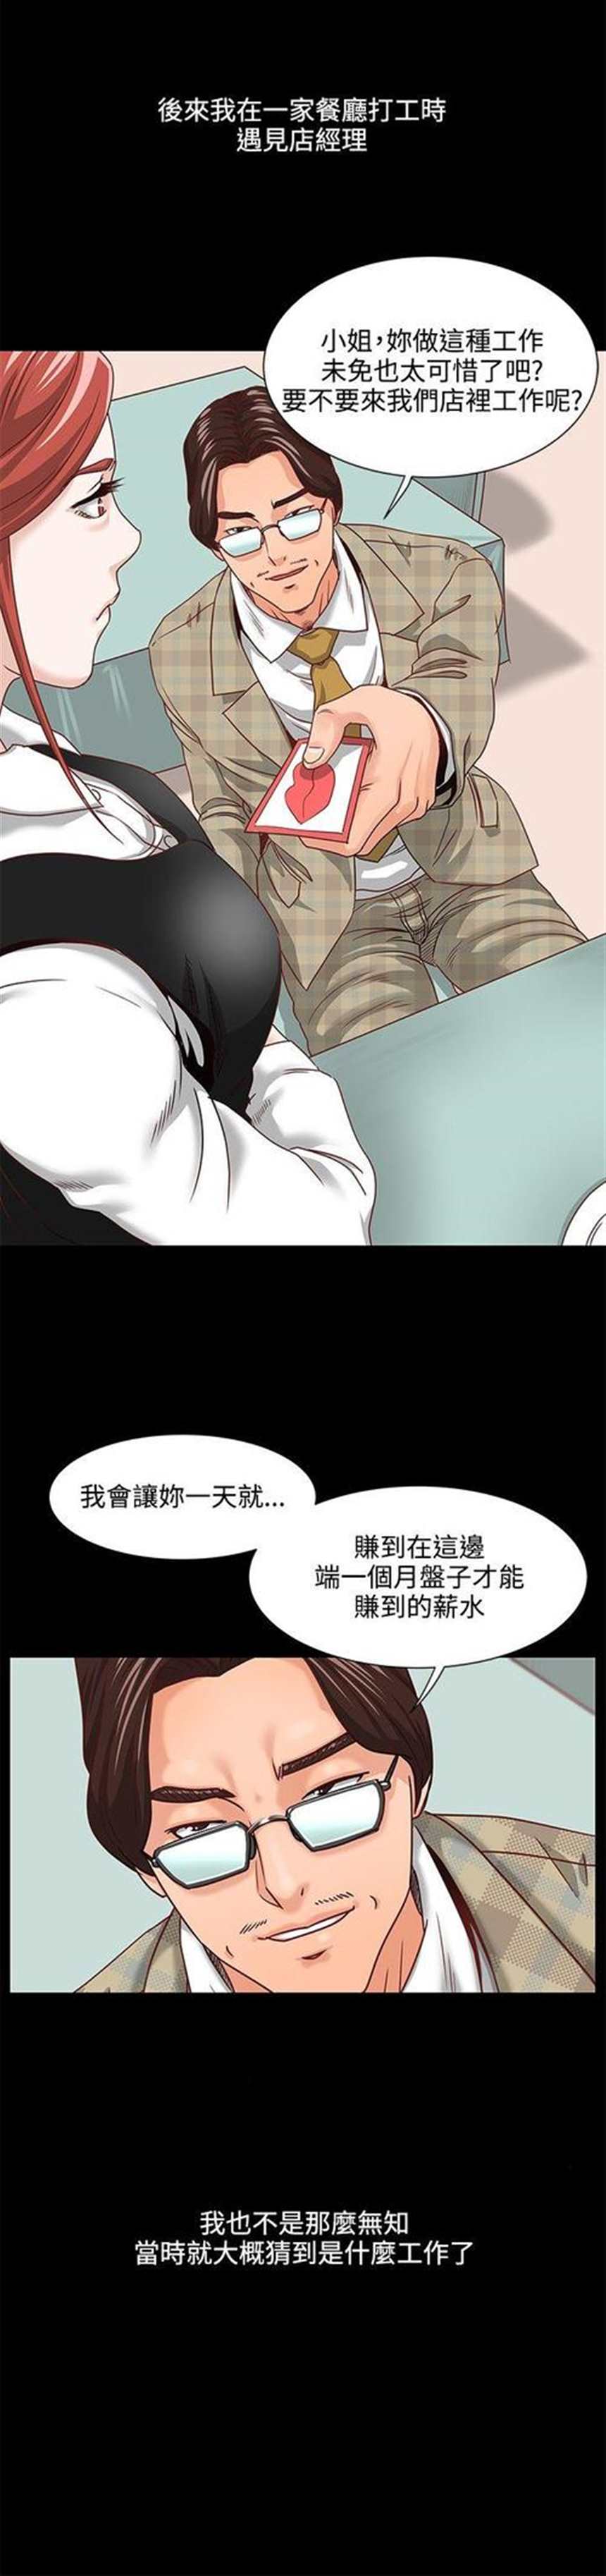 女神网咖  《奴隶姐妹》/《奴隶》韩国漫画(10)(点击浏览下一张趣图)